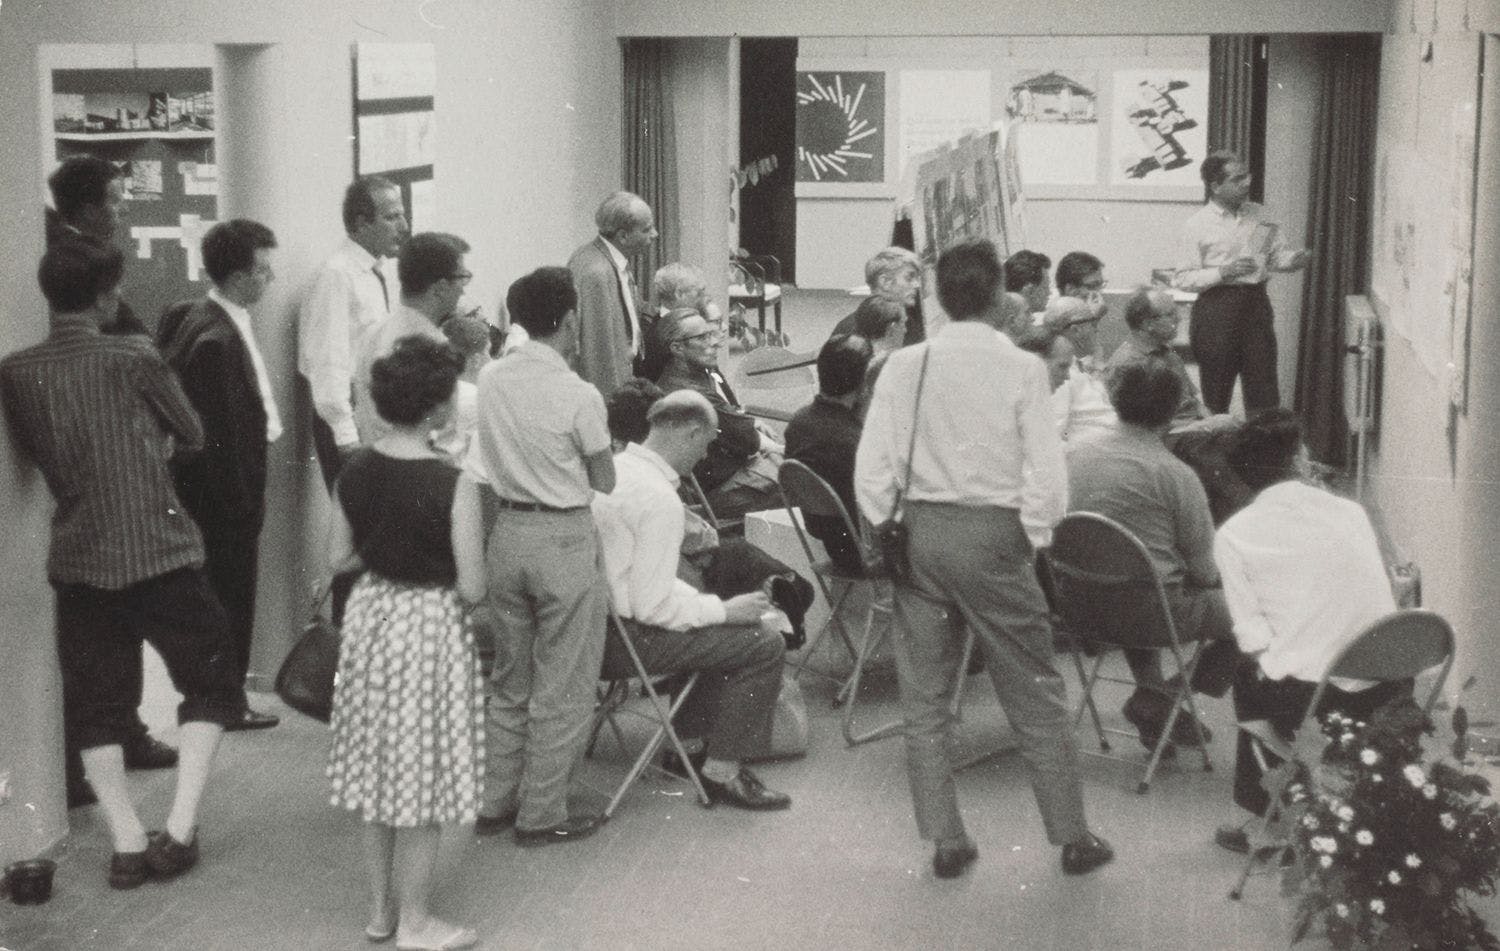 Presentatie op het CIAM congres in Otterlo, 1959. Collectie Het Nieuwe Instituut, archief Jaap Bakema, BAKE f23.